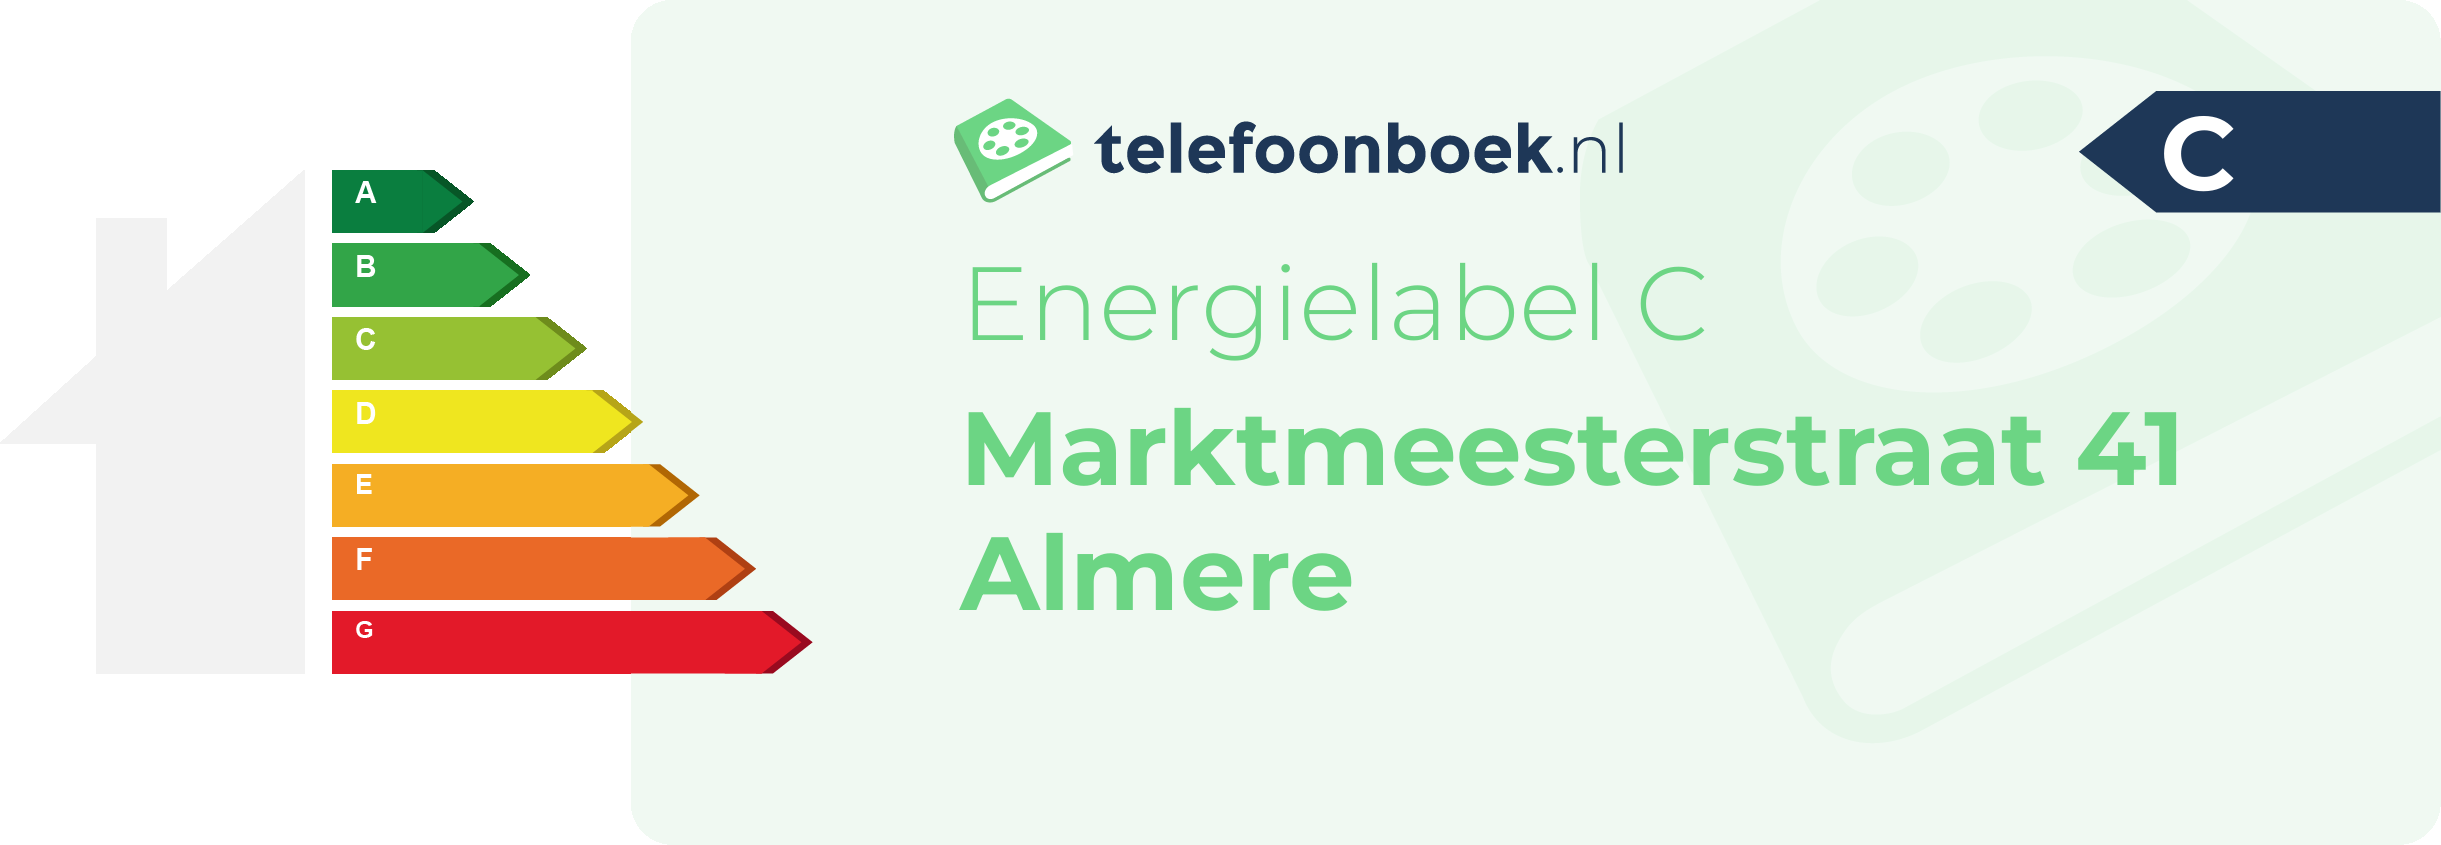 Energielabel Marktmeesterstraat 41 Almere